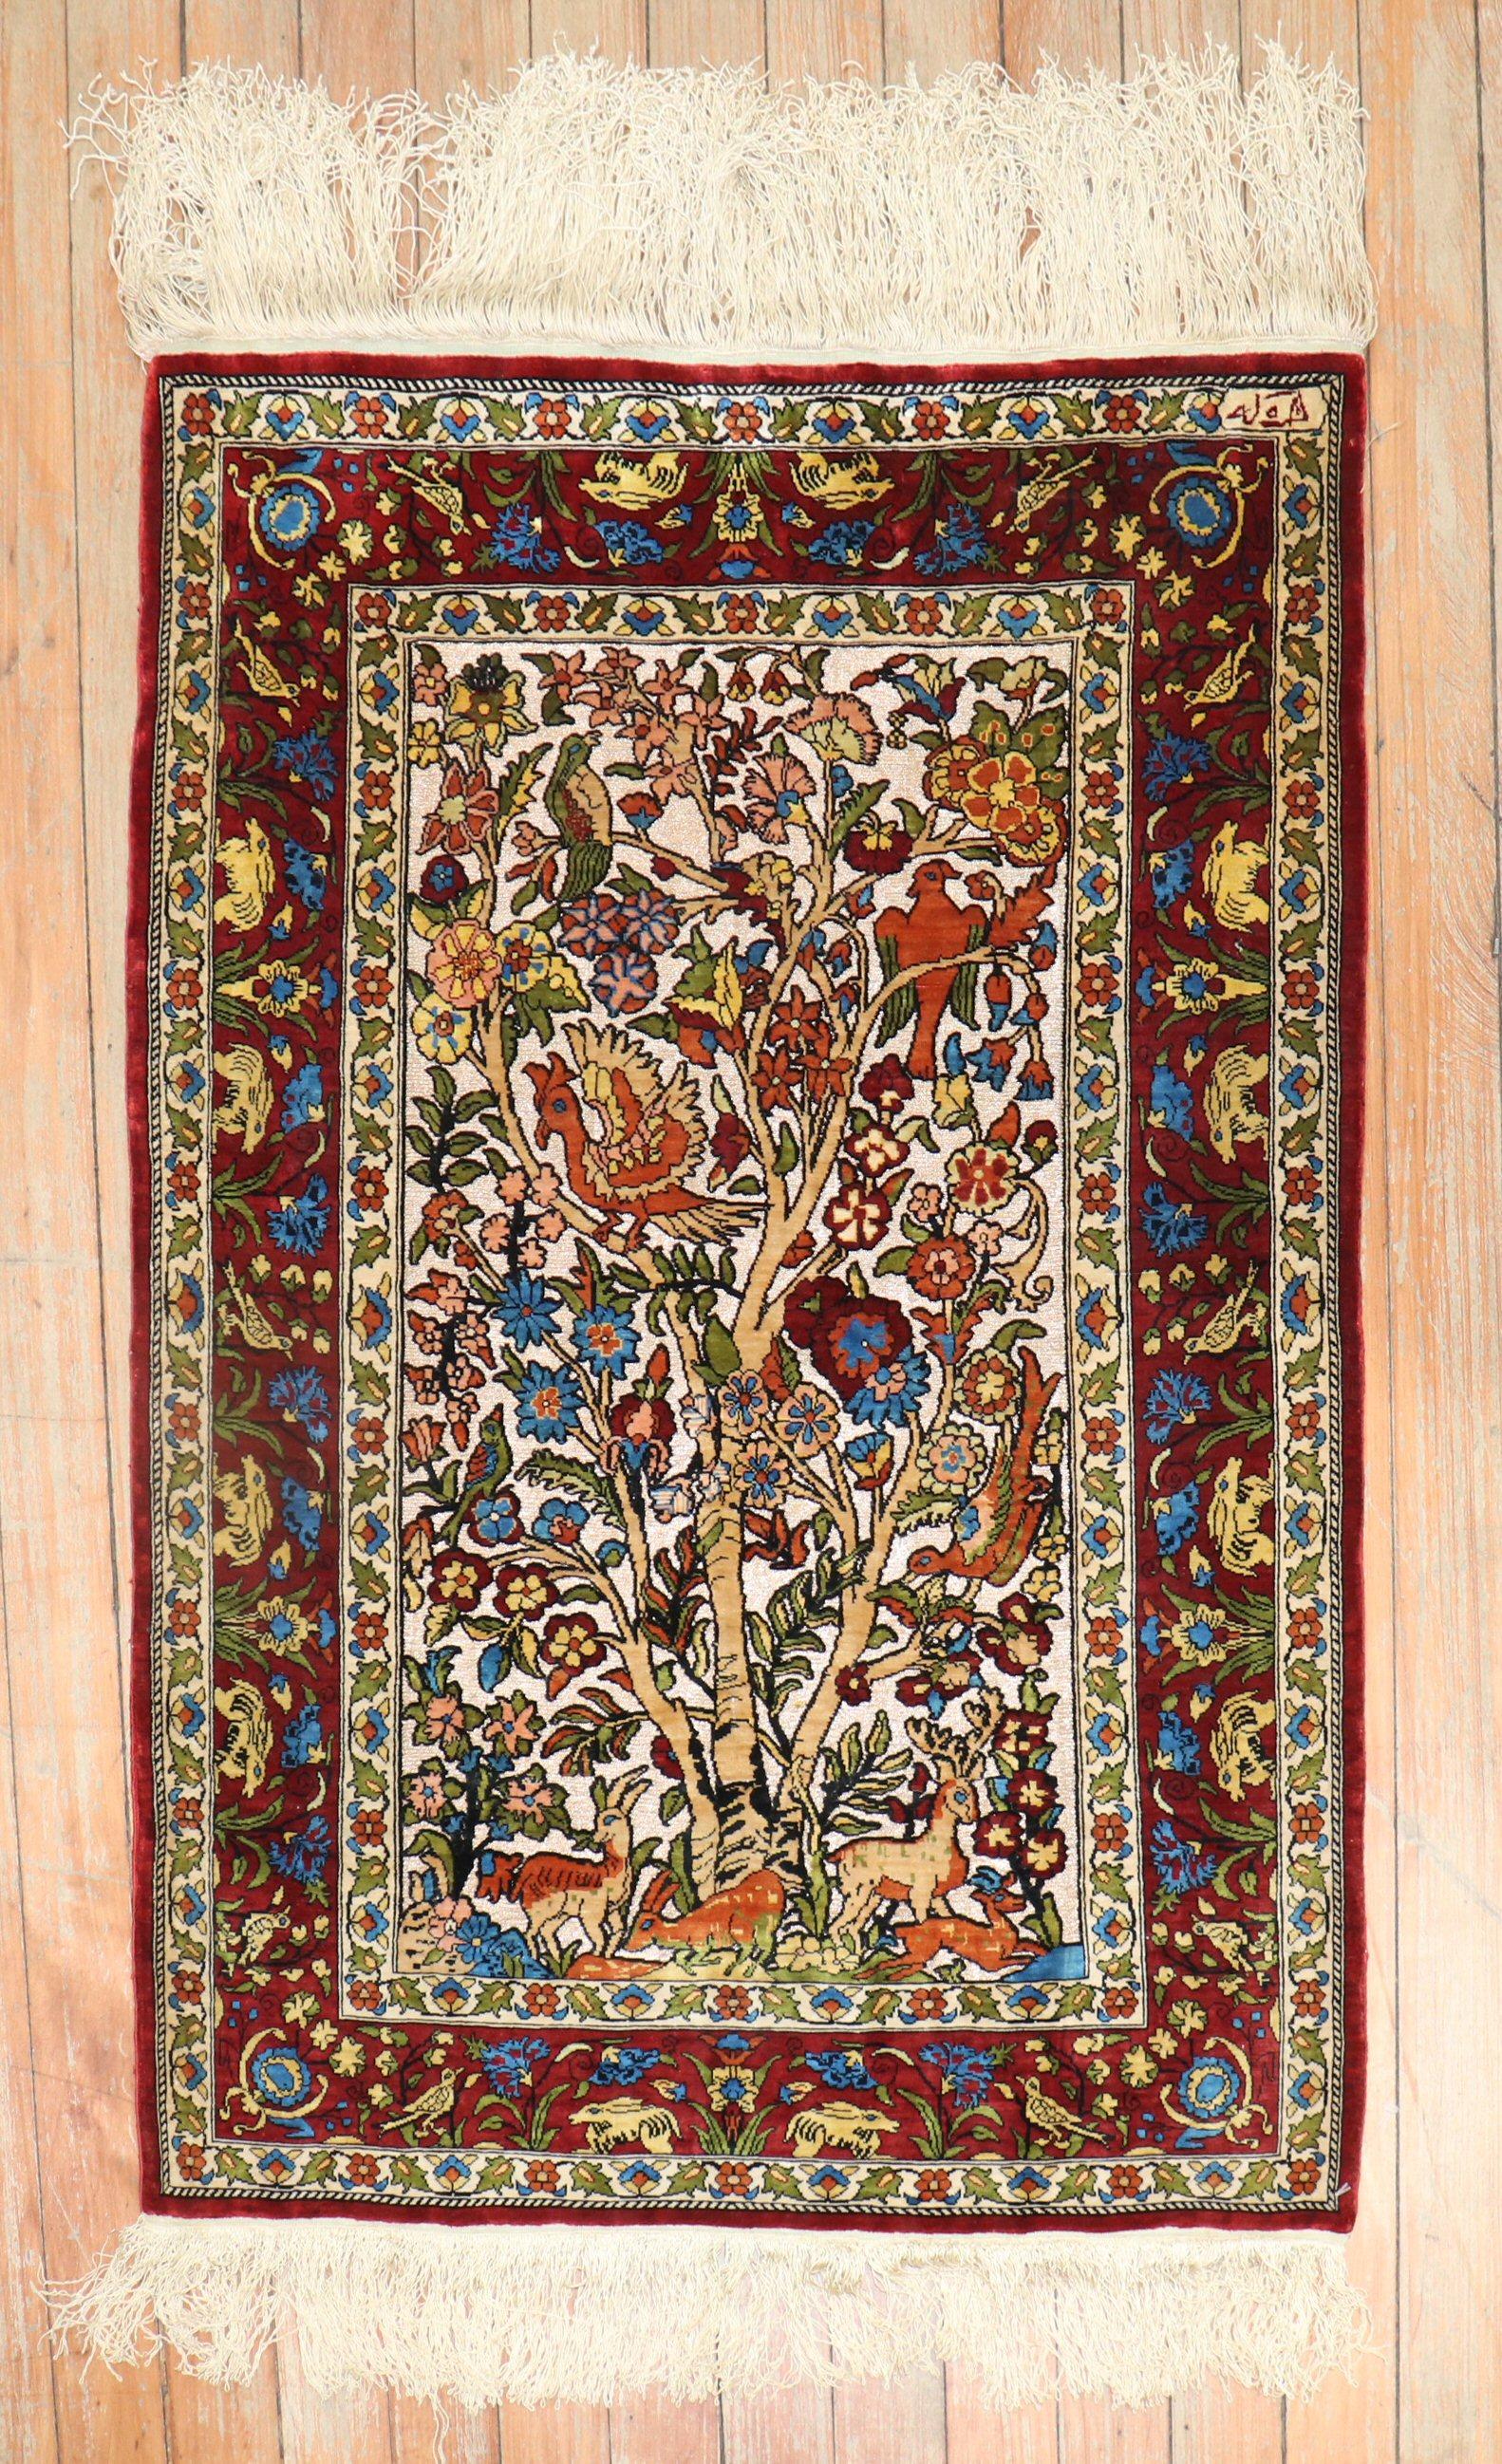 Einzigartiger Herekeh-Teppich aus feiner türkischer Seide mit einem schönen, malerischen Tiermotiv auf elfenbeinfarbenem Feld.

2' x 2'11'